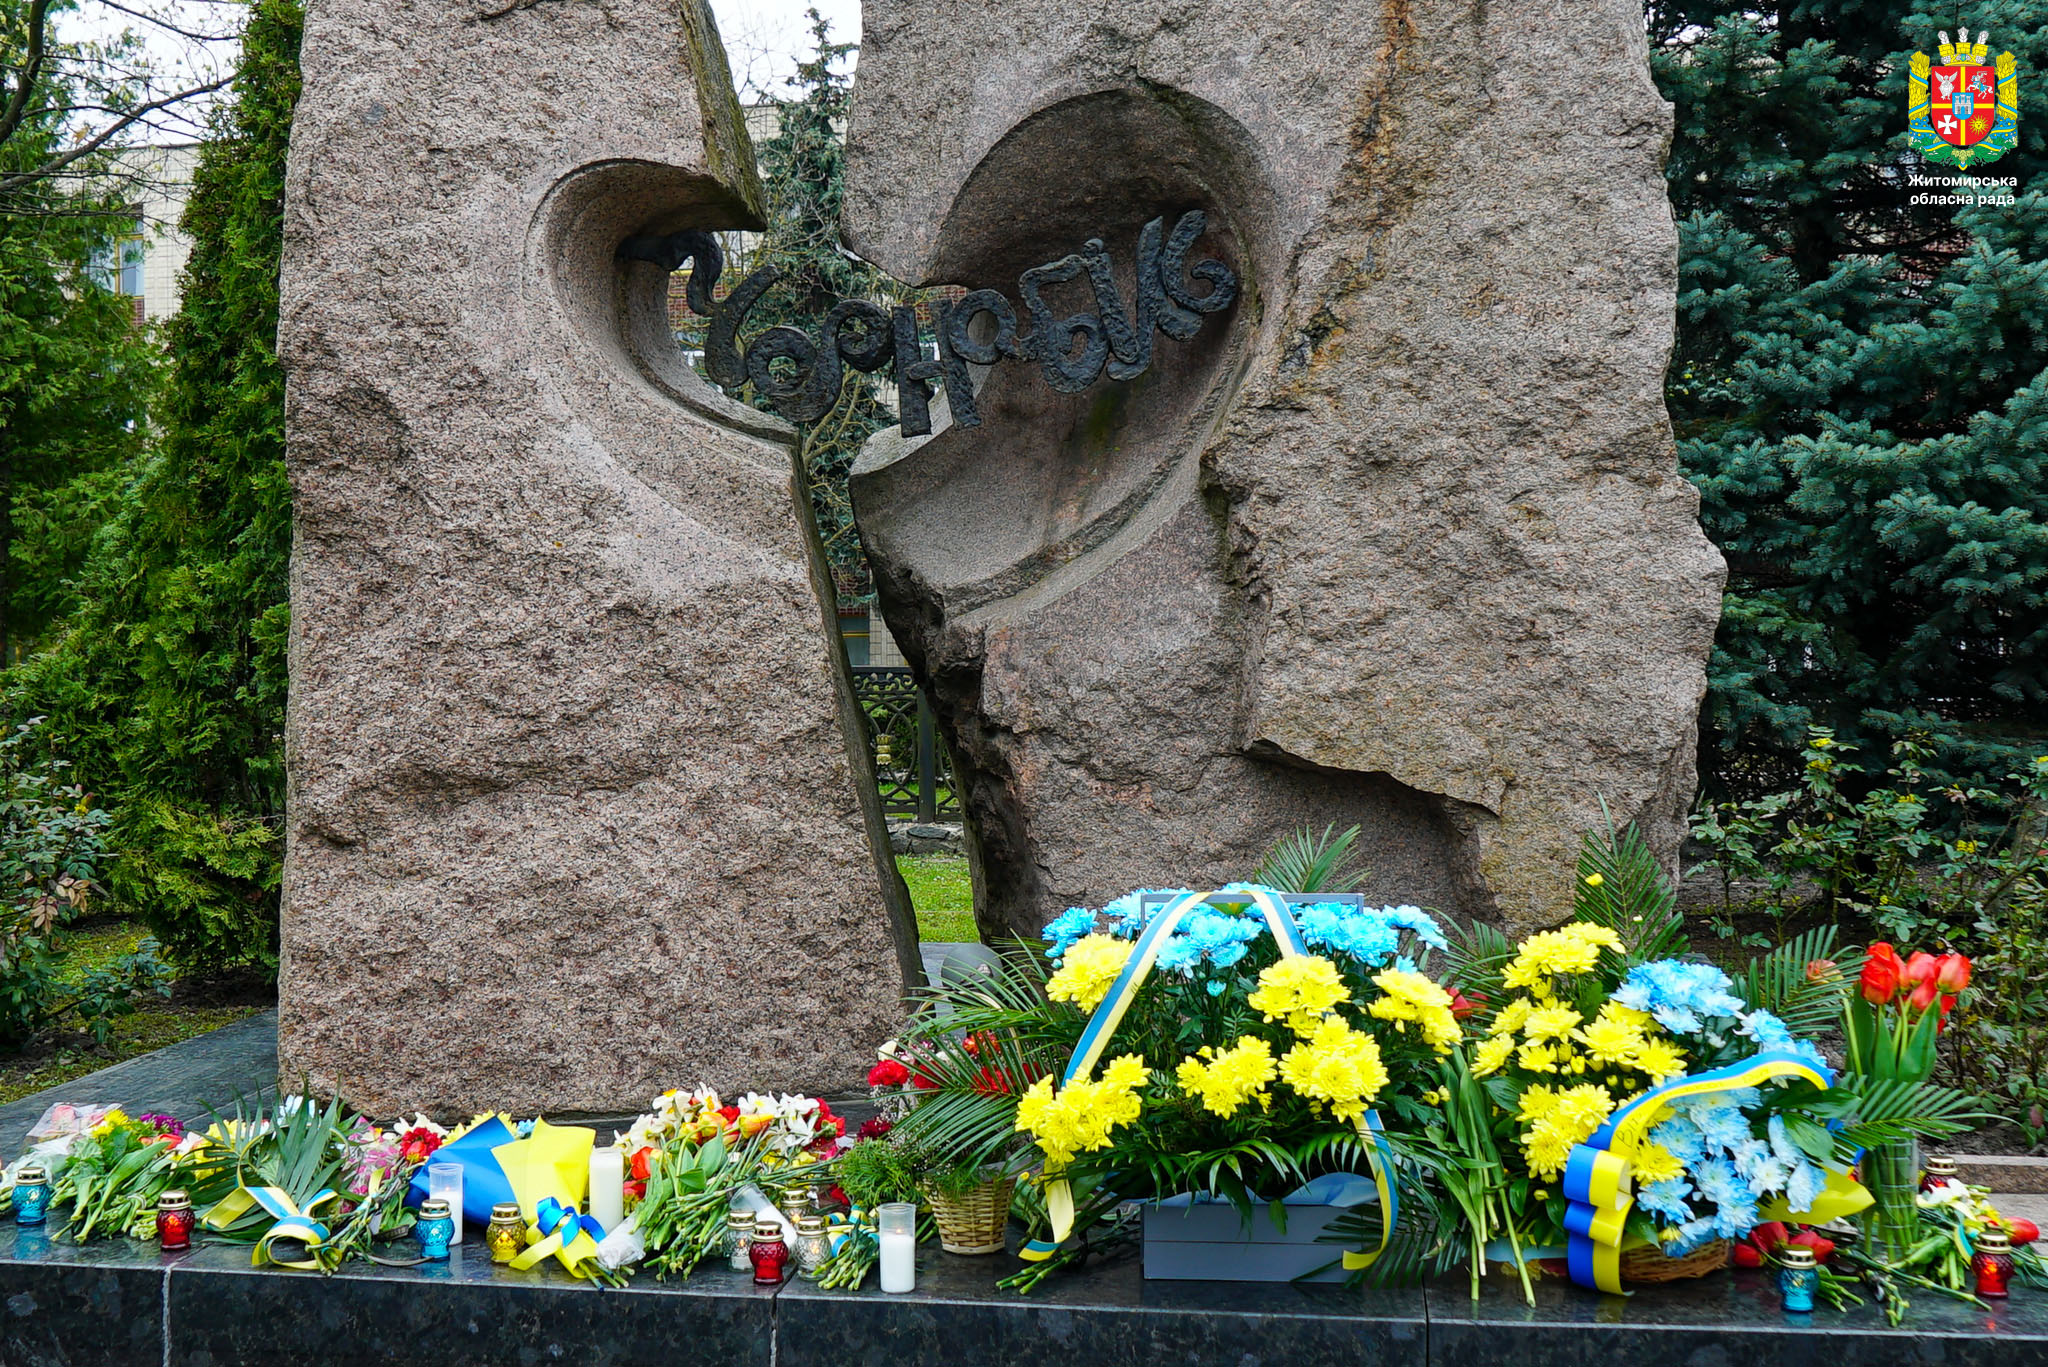 Володимир Ширма: Аварія на Чорнобильській АЕС - трагедія, яку ми не маємо права забути